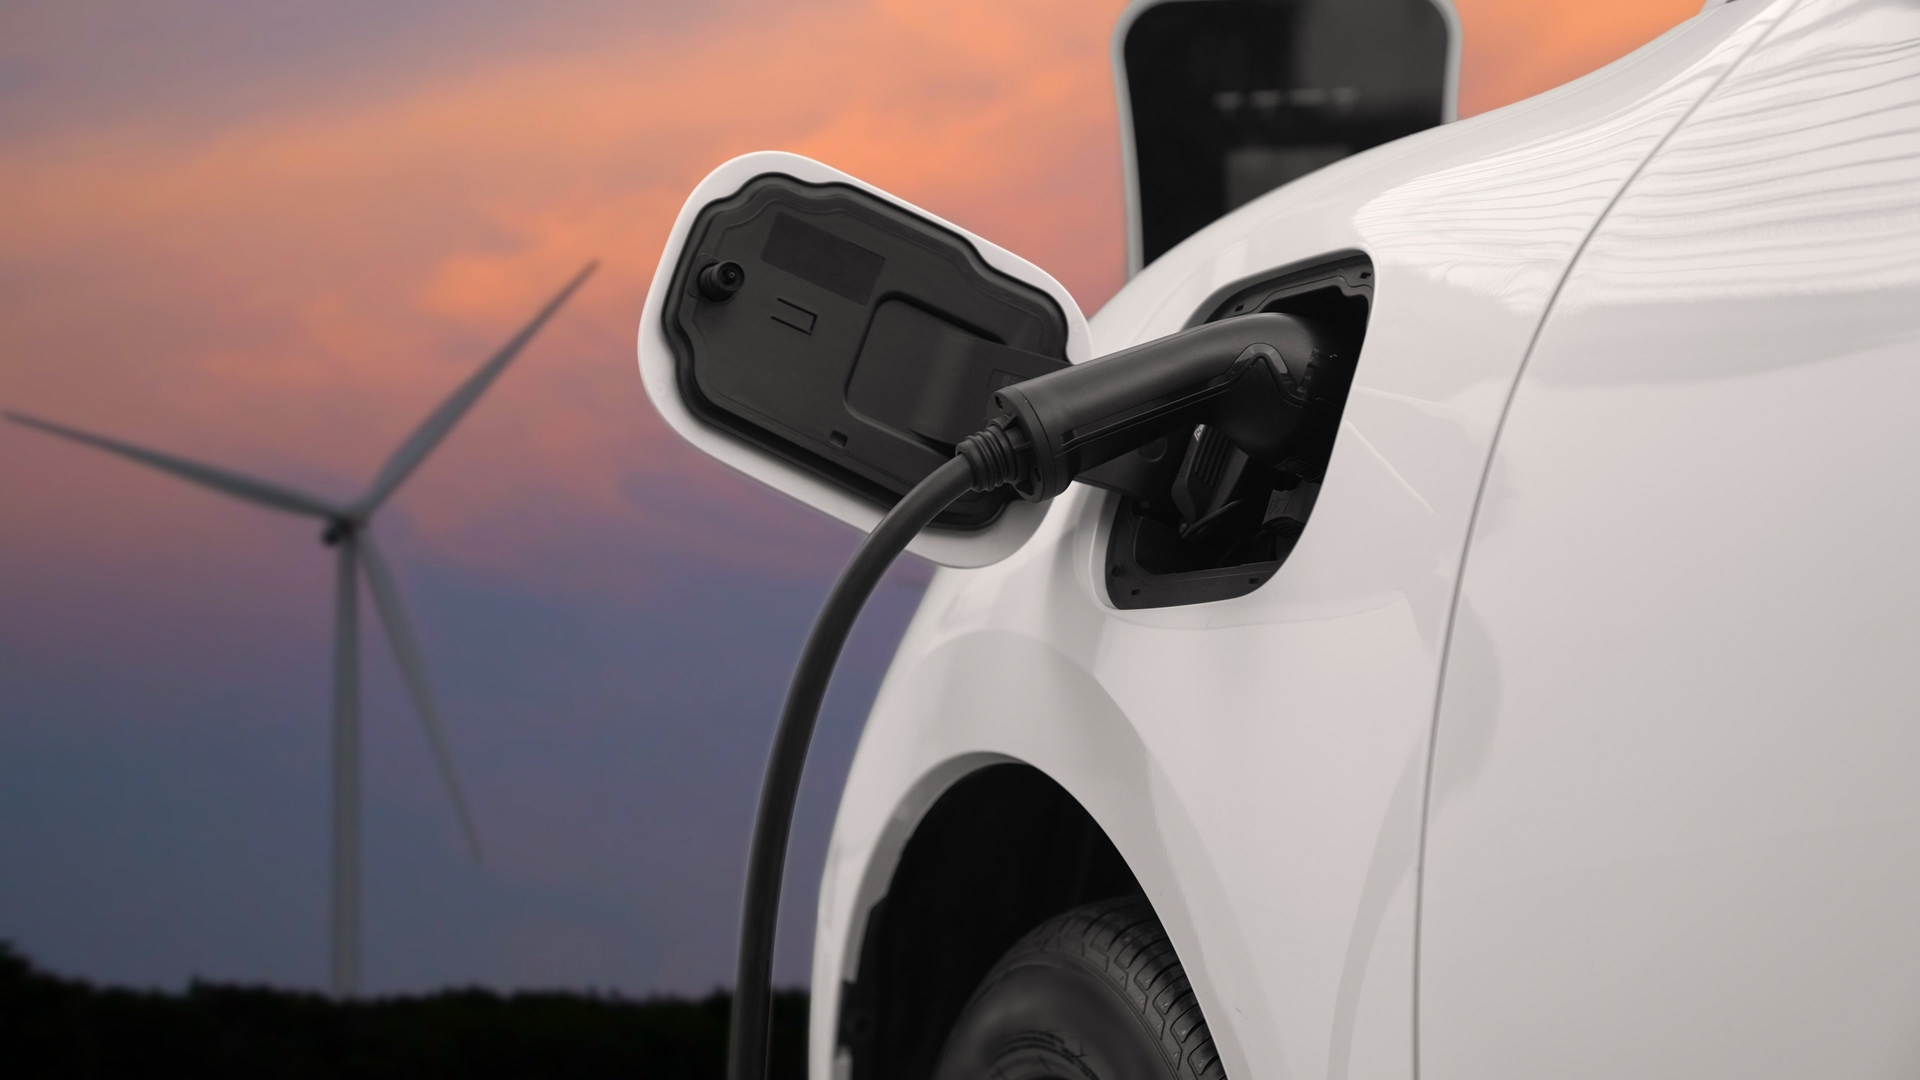 Cargadores electricos coches Doble A Energia